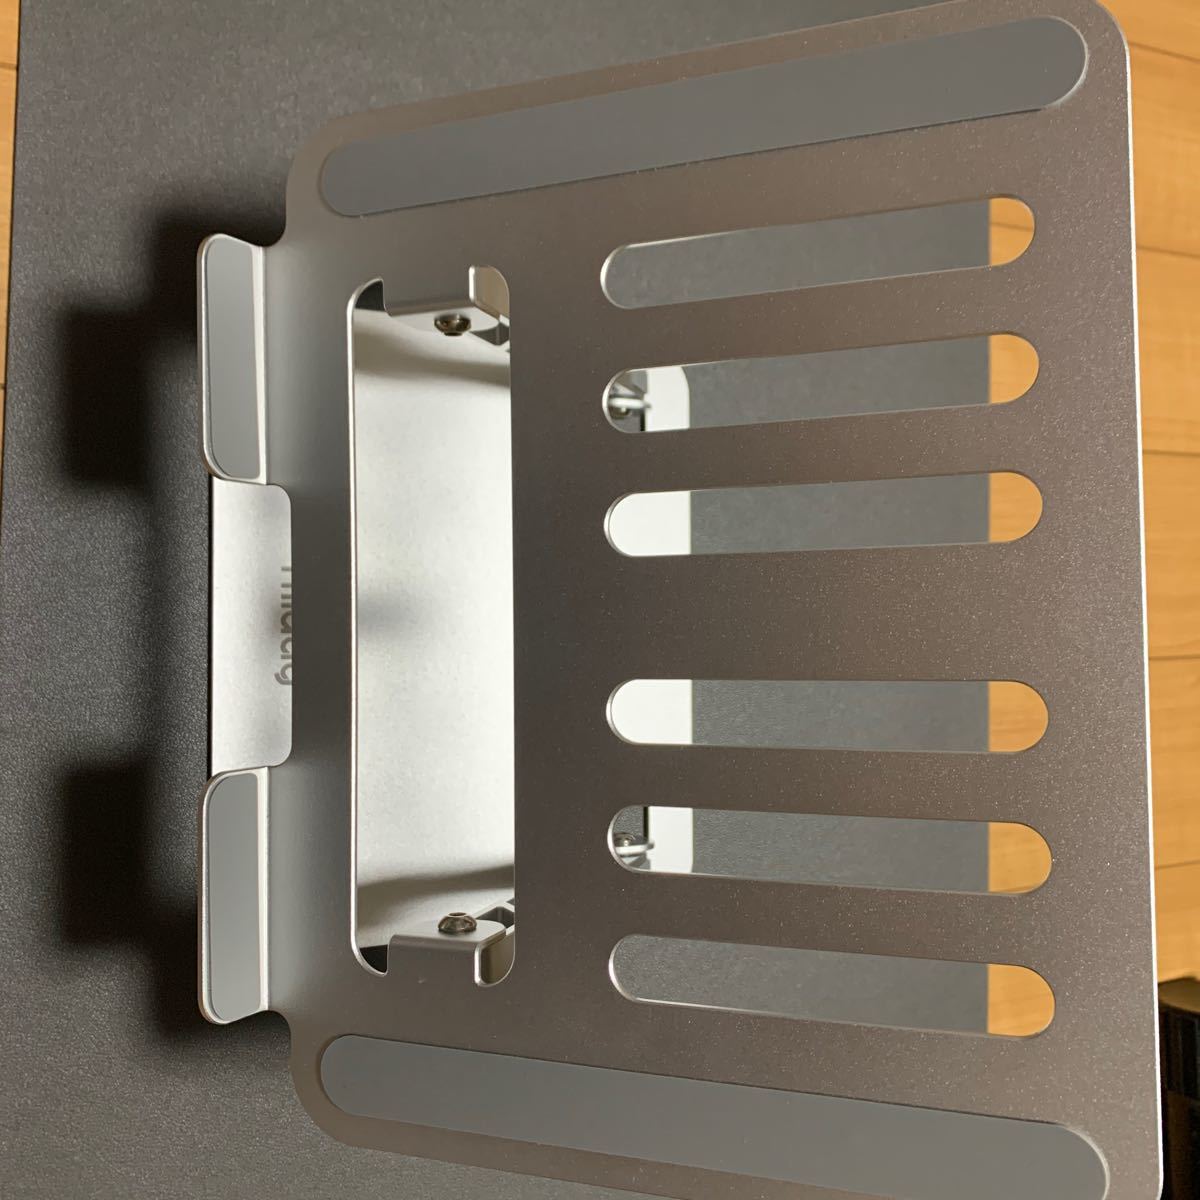 Miady ノートパソコン タブレット iPadスタンド 折りたたみ式 滑り止め 高さ/角度調整可能 放熱性 軽量 10-15.6インチに対応 (シルバー)_画像4